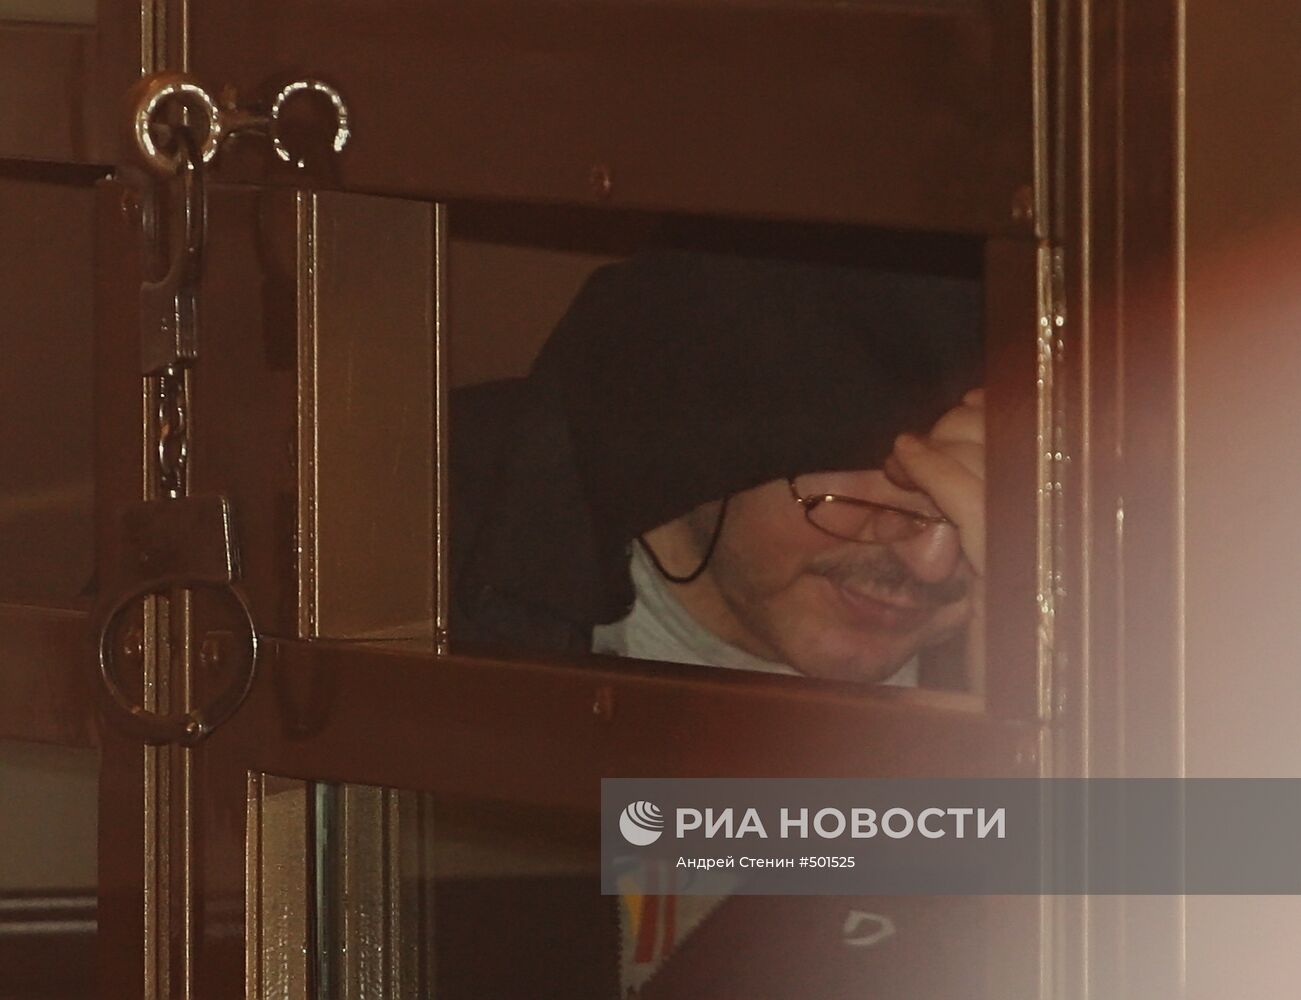 Оглашение приговора Владимиру Барсукову (Кумарину) в Мосгорсуде